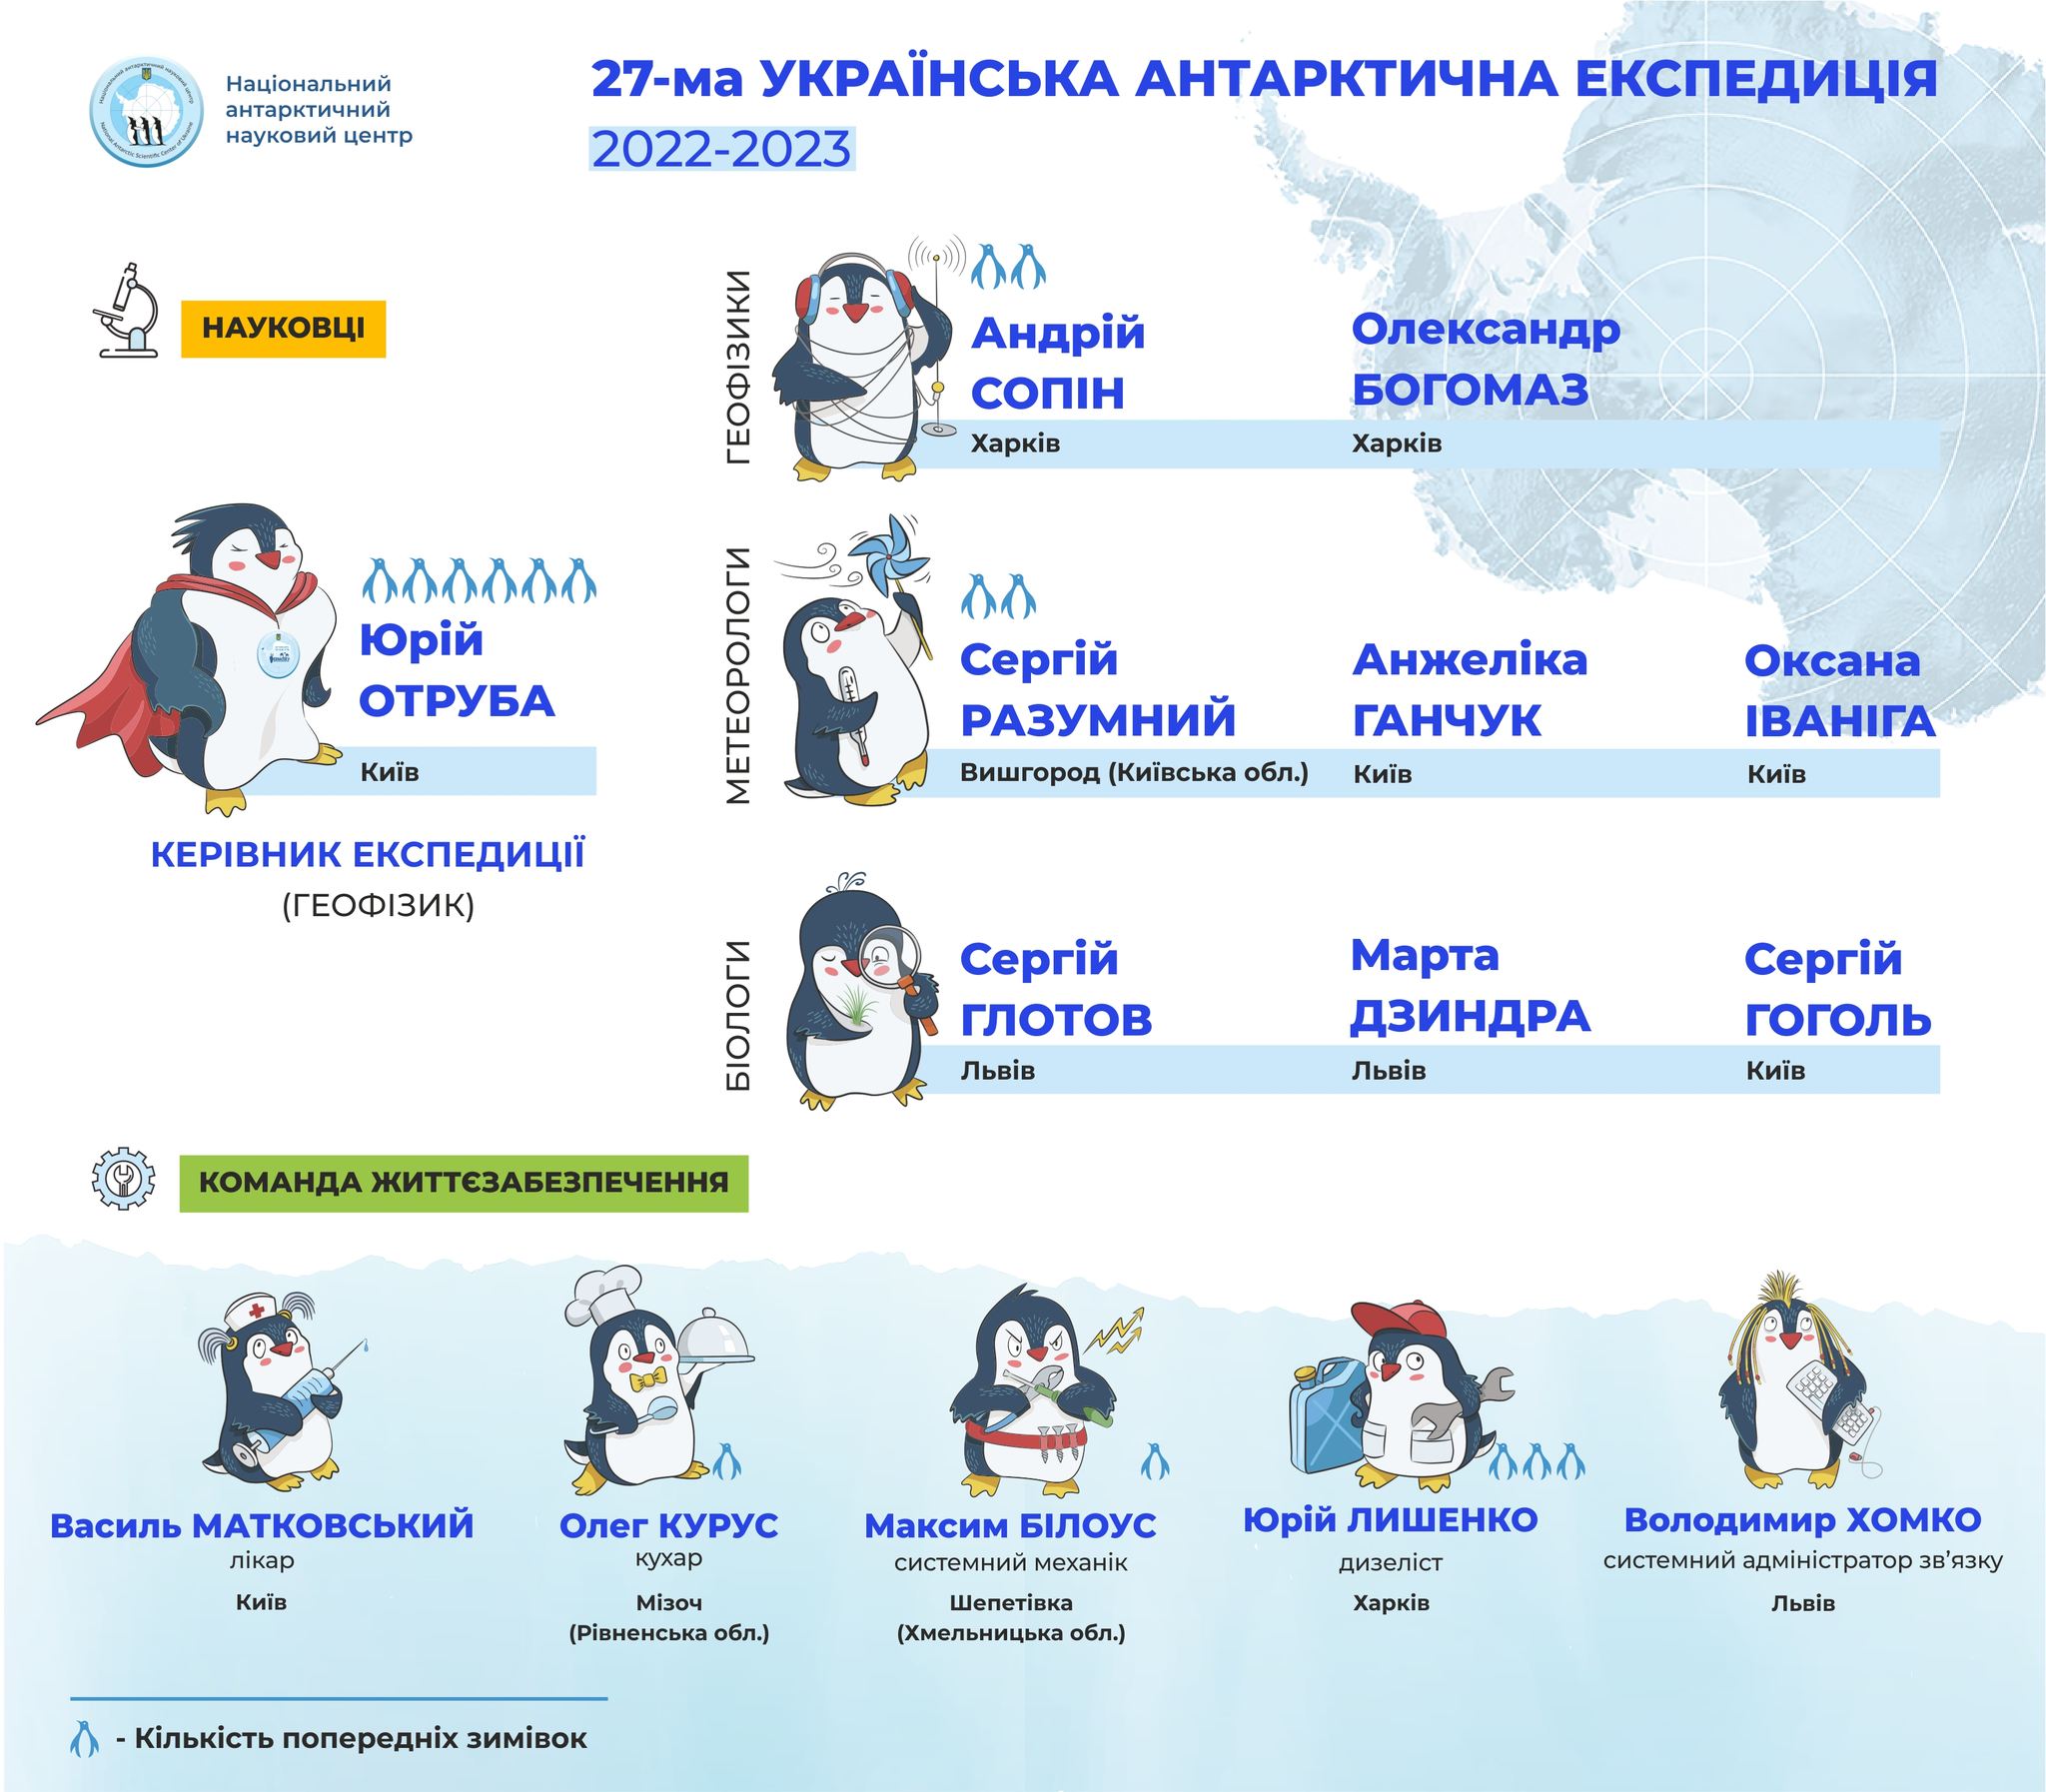 Украина подготовила команду ученых для экспедиции на Антарктиду: почему увеличили количество женщин (ФОТО) - фото 3